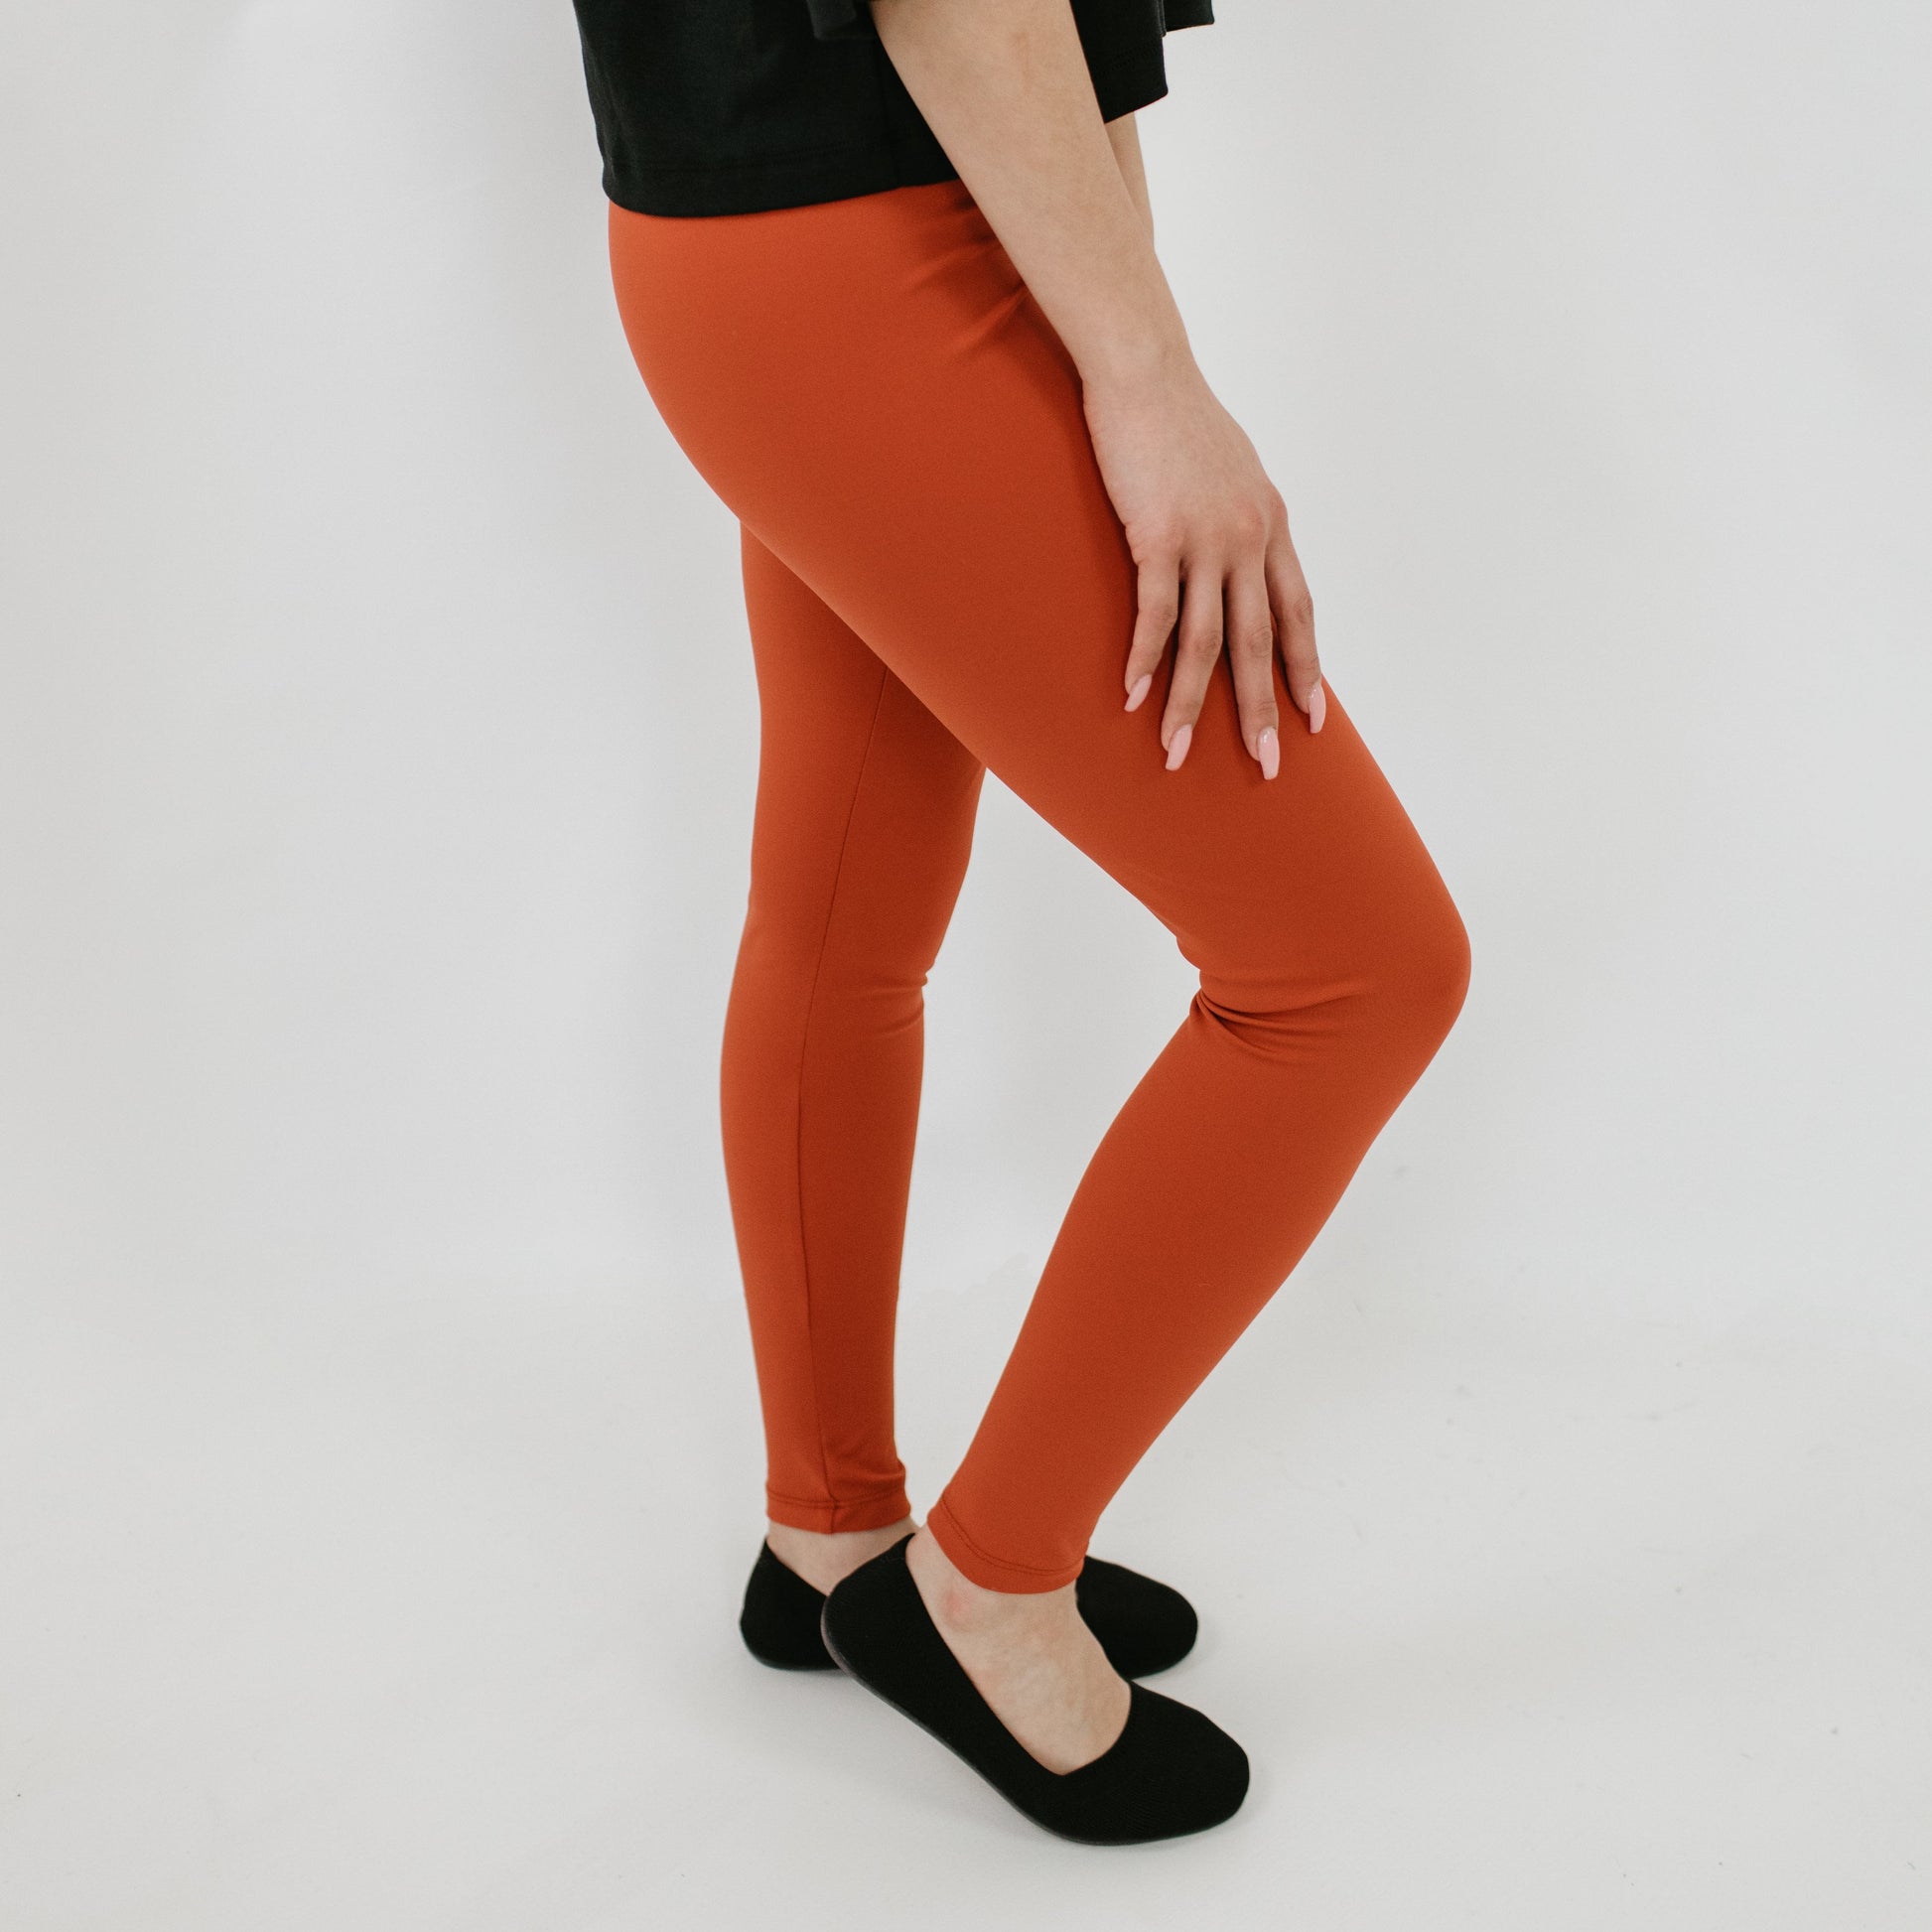 Women's Orange High-Waisted Pants & Leggings